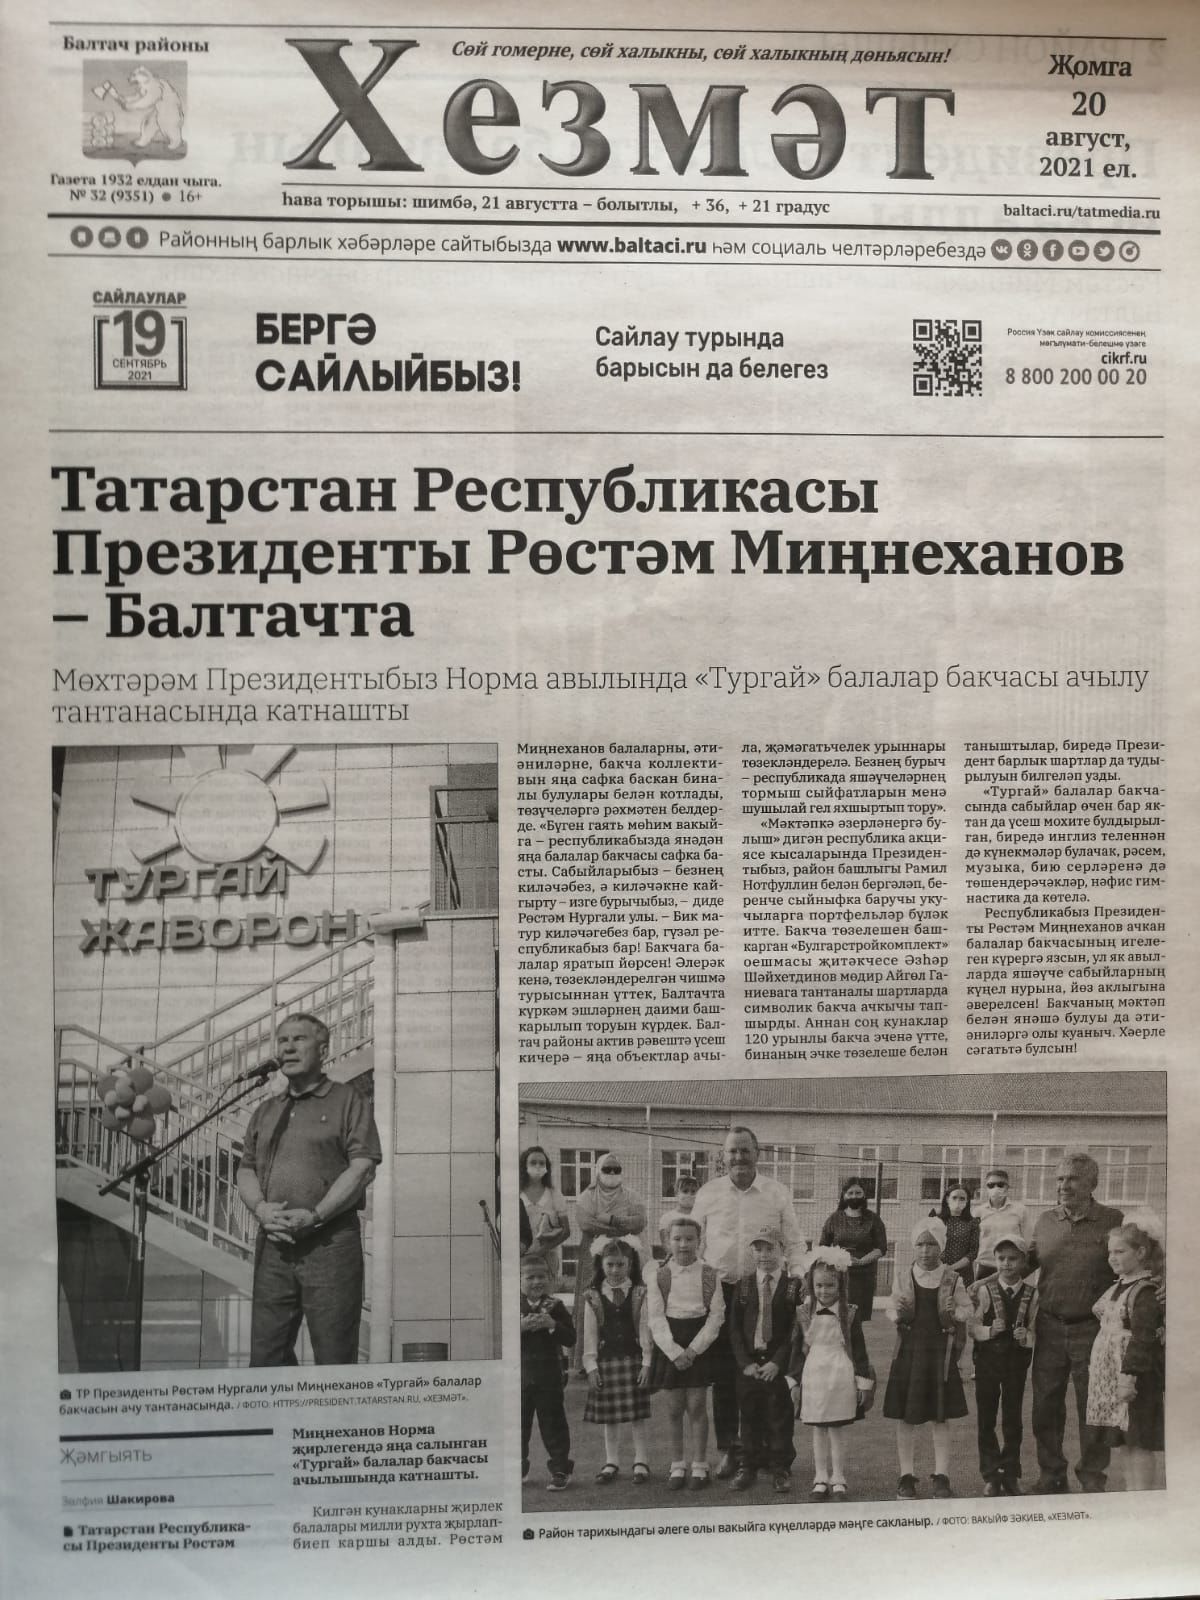 Газетаның 32нче санында (20 август, 2021 ел) чыгарылган белдерүләр һәм рекламалар